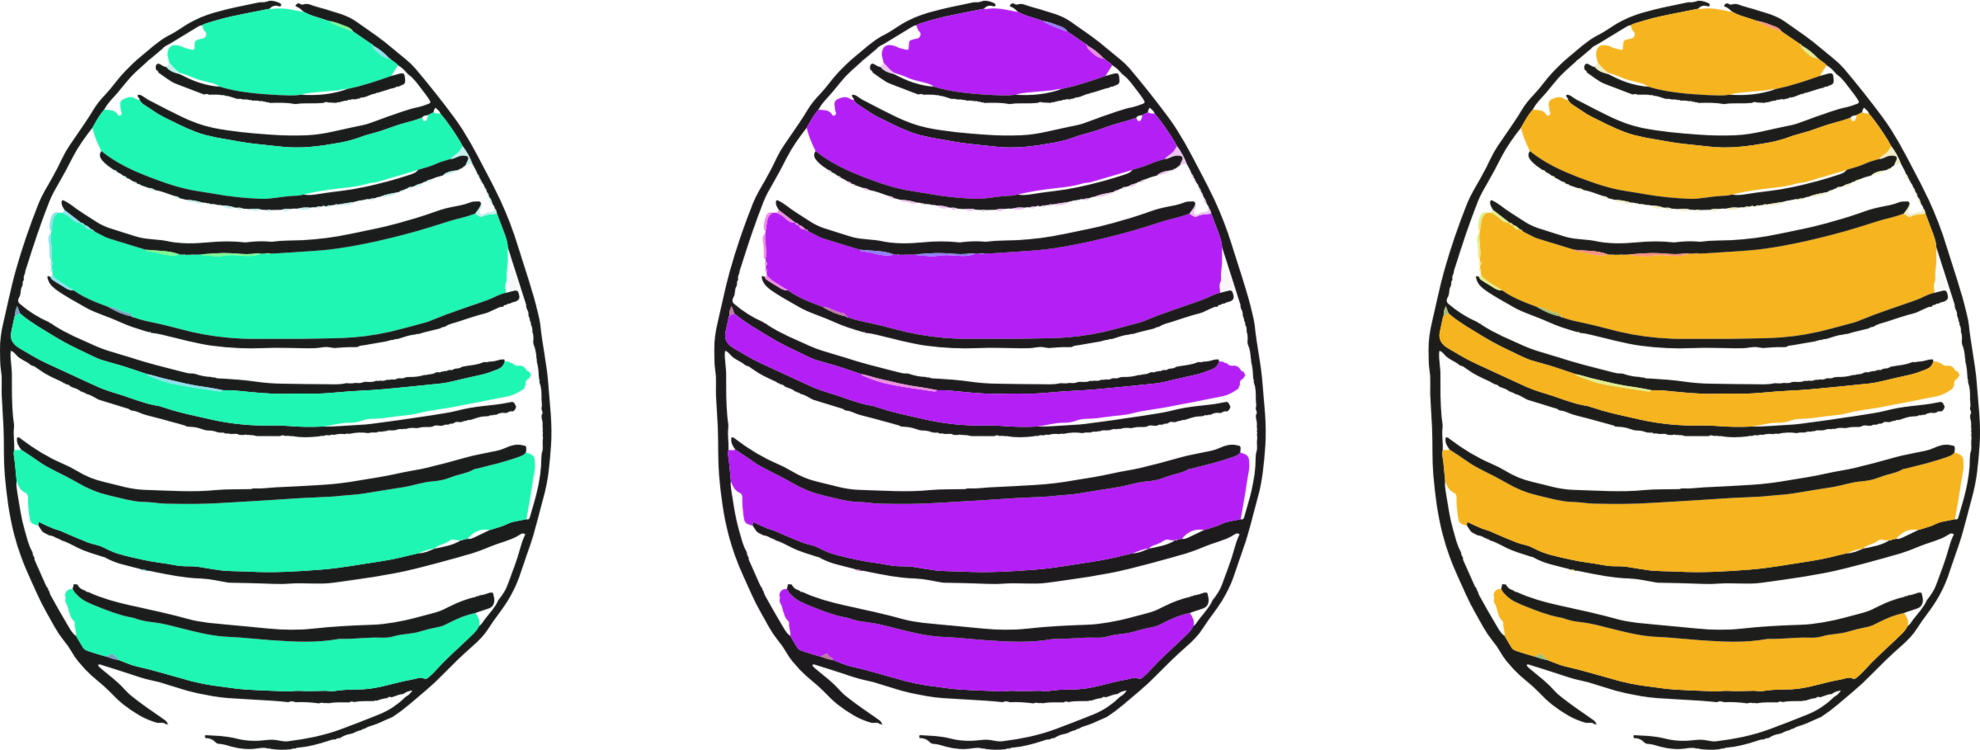 Easter Egg Egg Decorating Egg Tapping - Easter Egg (1980x750)